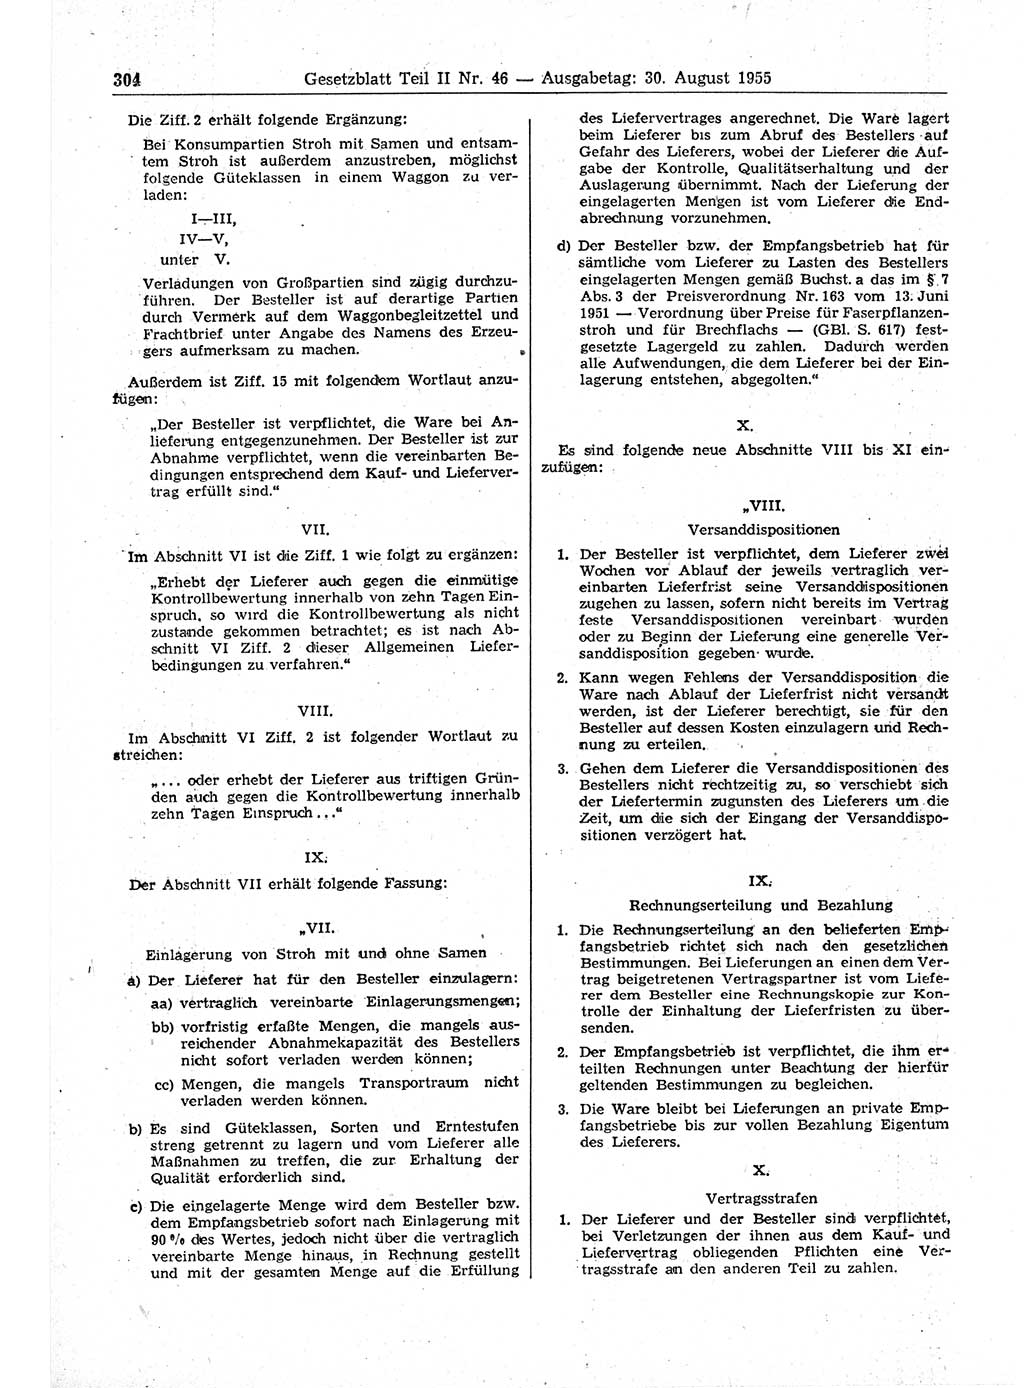 Gesetzblatt (GBl.) der Deutschen Demokratischen Republik (DDR) Teil ⅠⅠ 1955, Seite 304 (GBl. DDR ⅠⅠ 1955, S. 304)